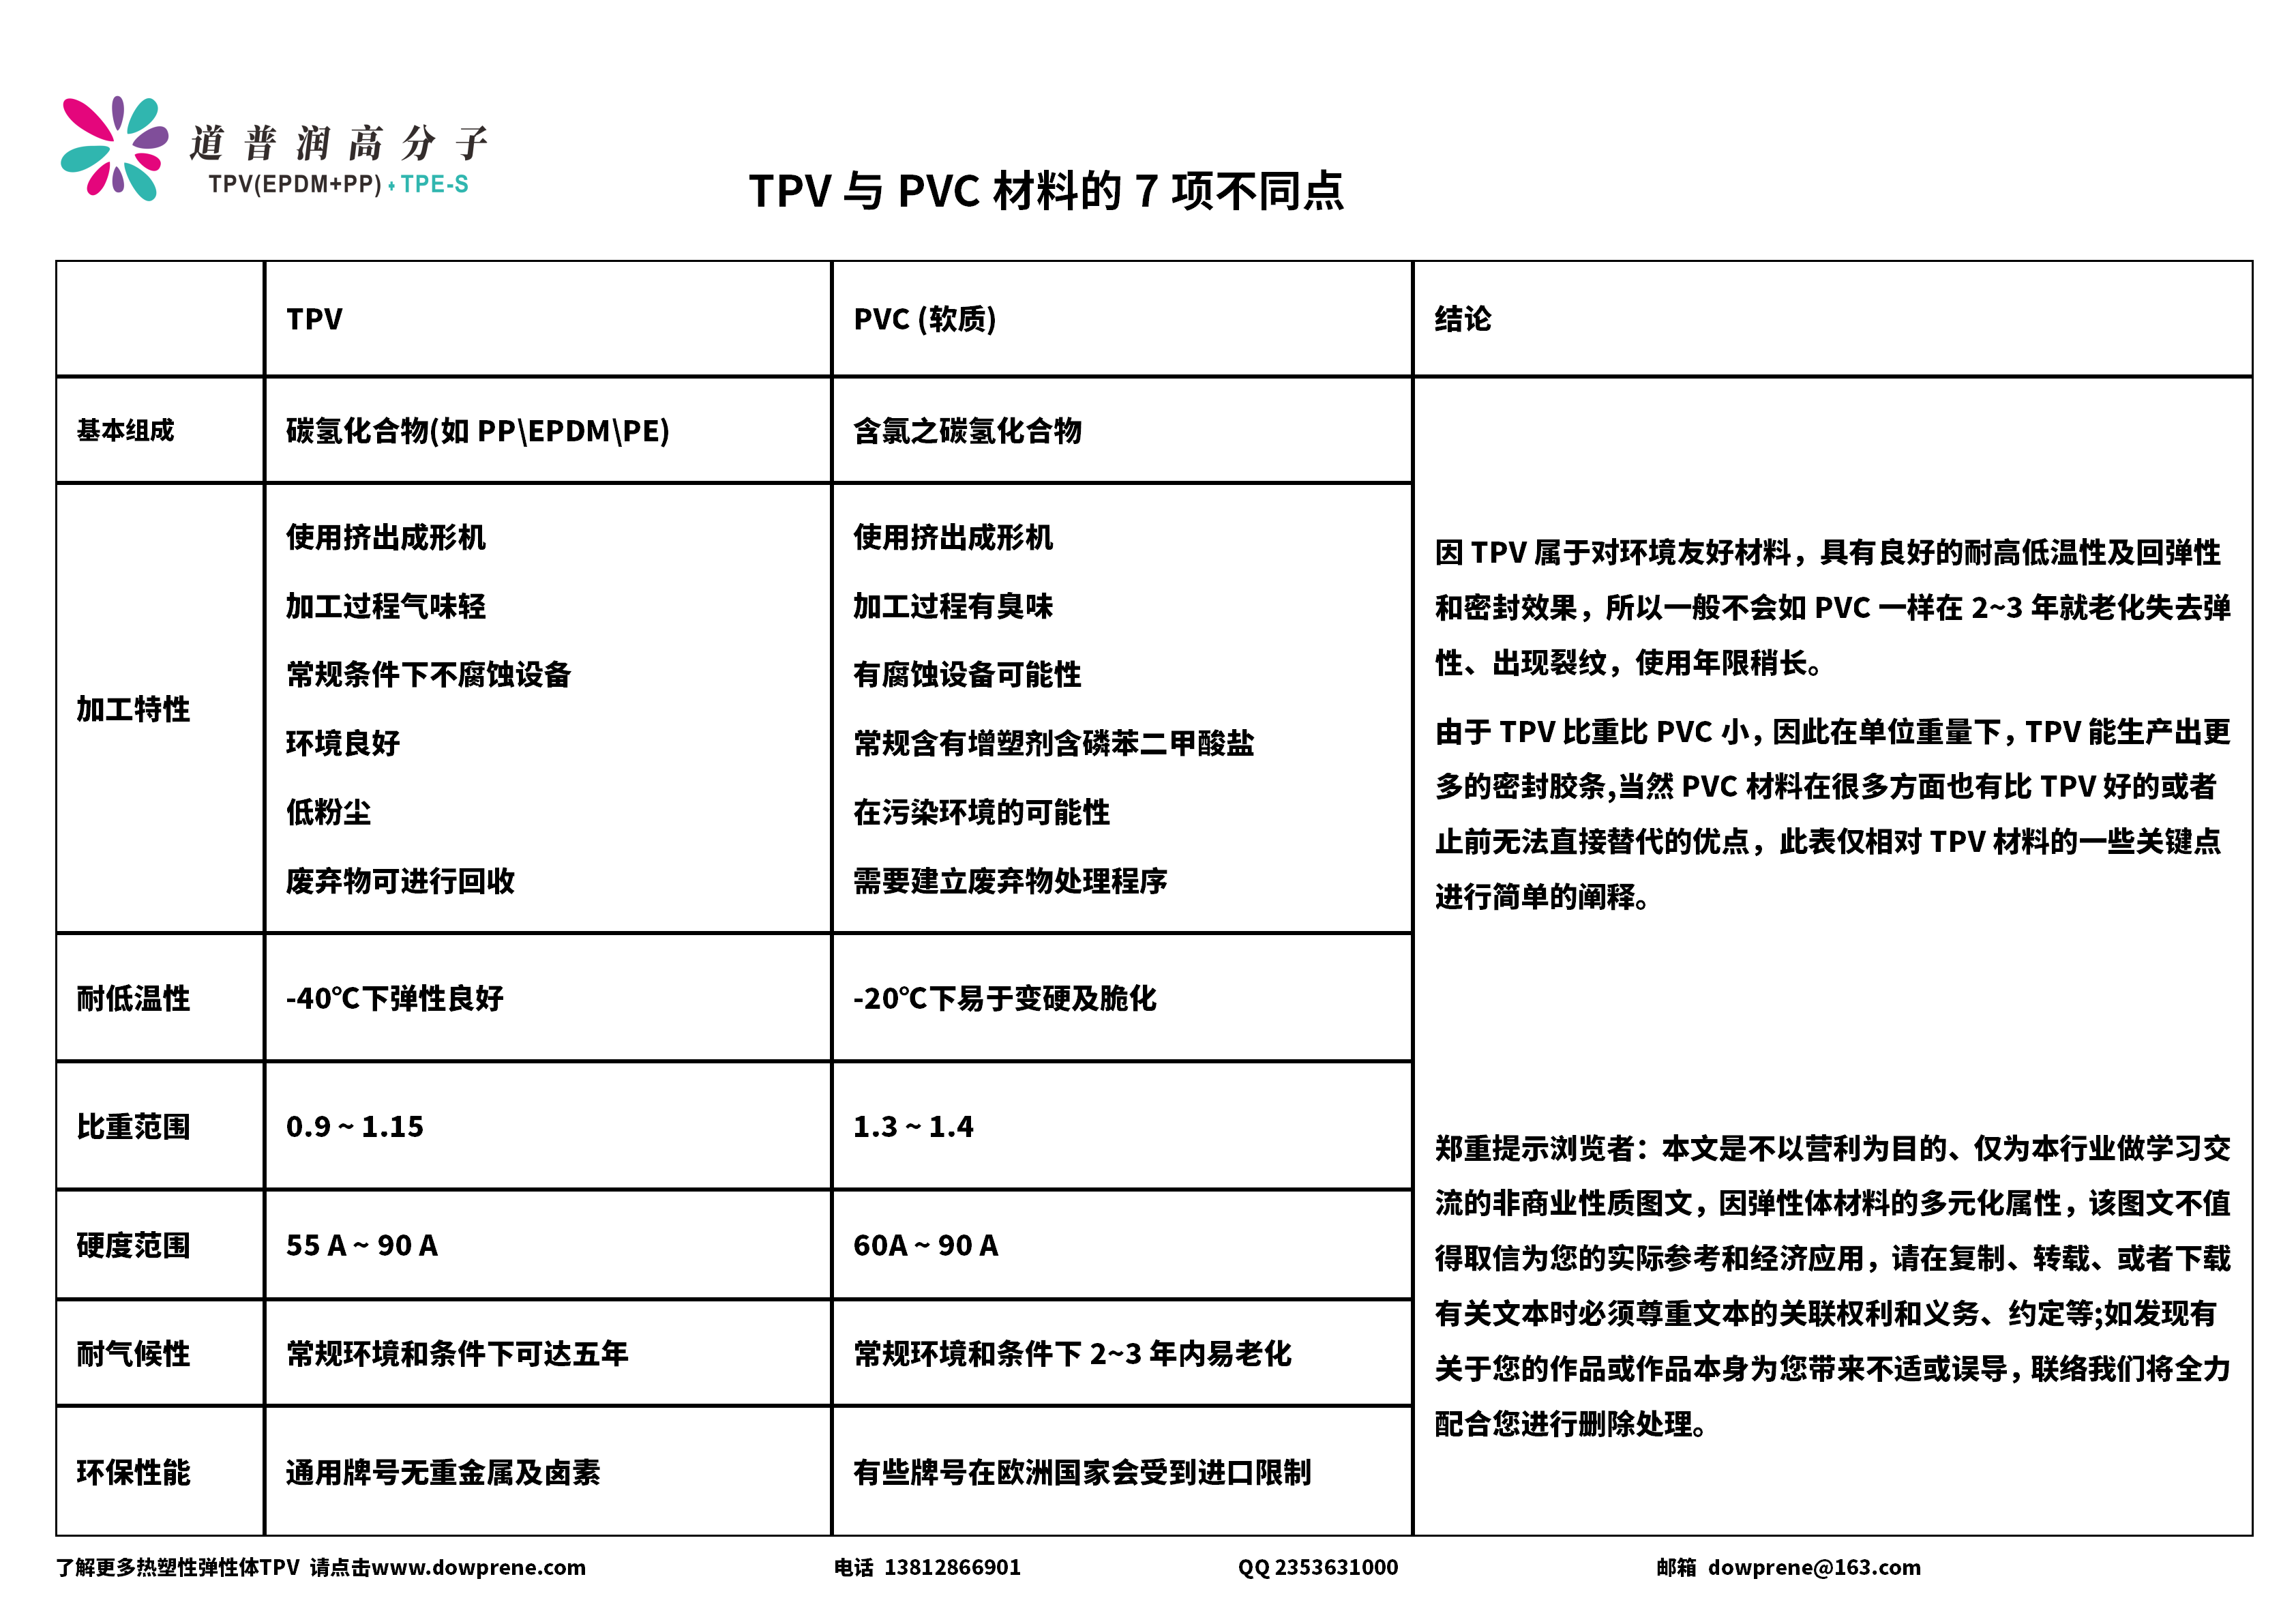 TPV替代PVC的七个大不同